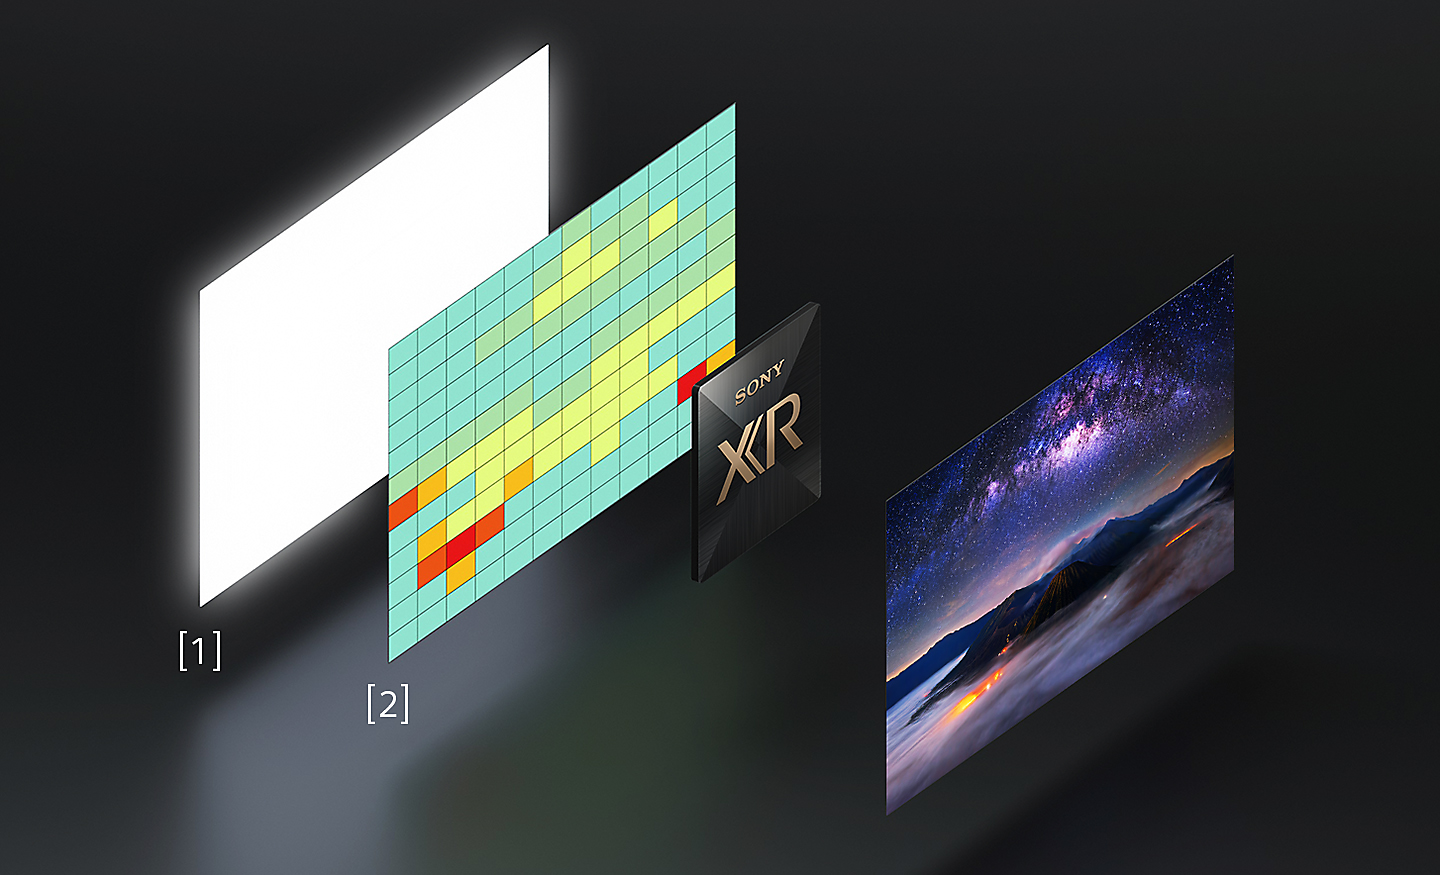 Зліва показані похилі зображення панелі високої яскравості та карти розподілу температури, а праворуч - зображення зображення кольорового екрану BRAVIA